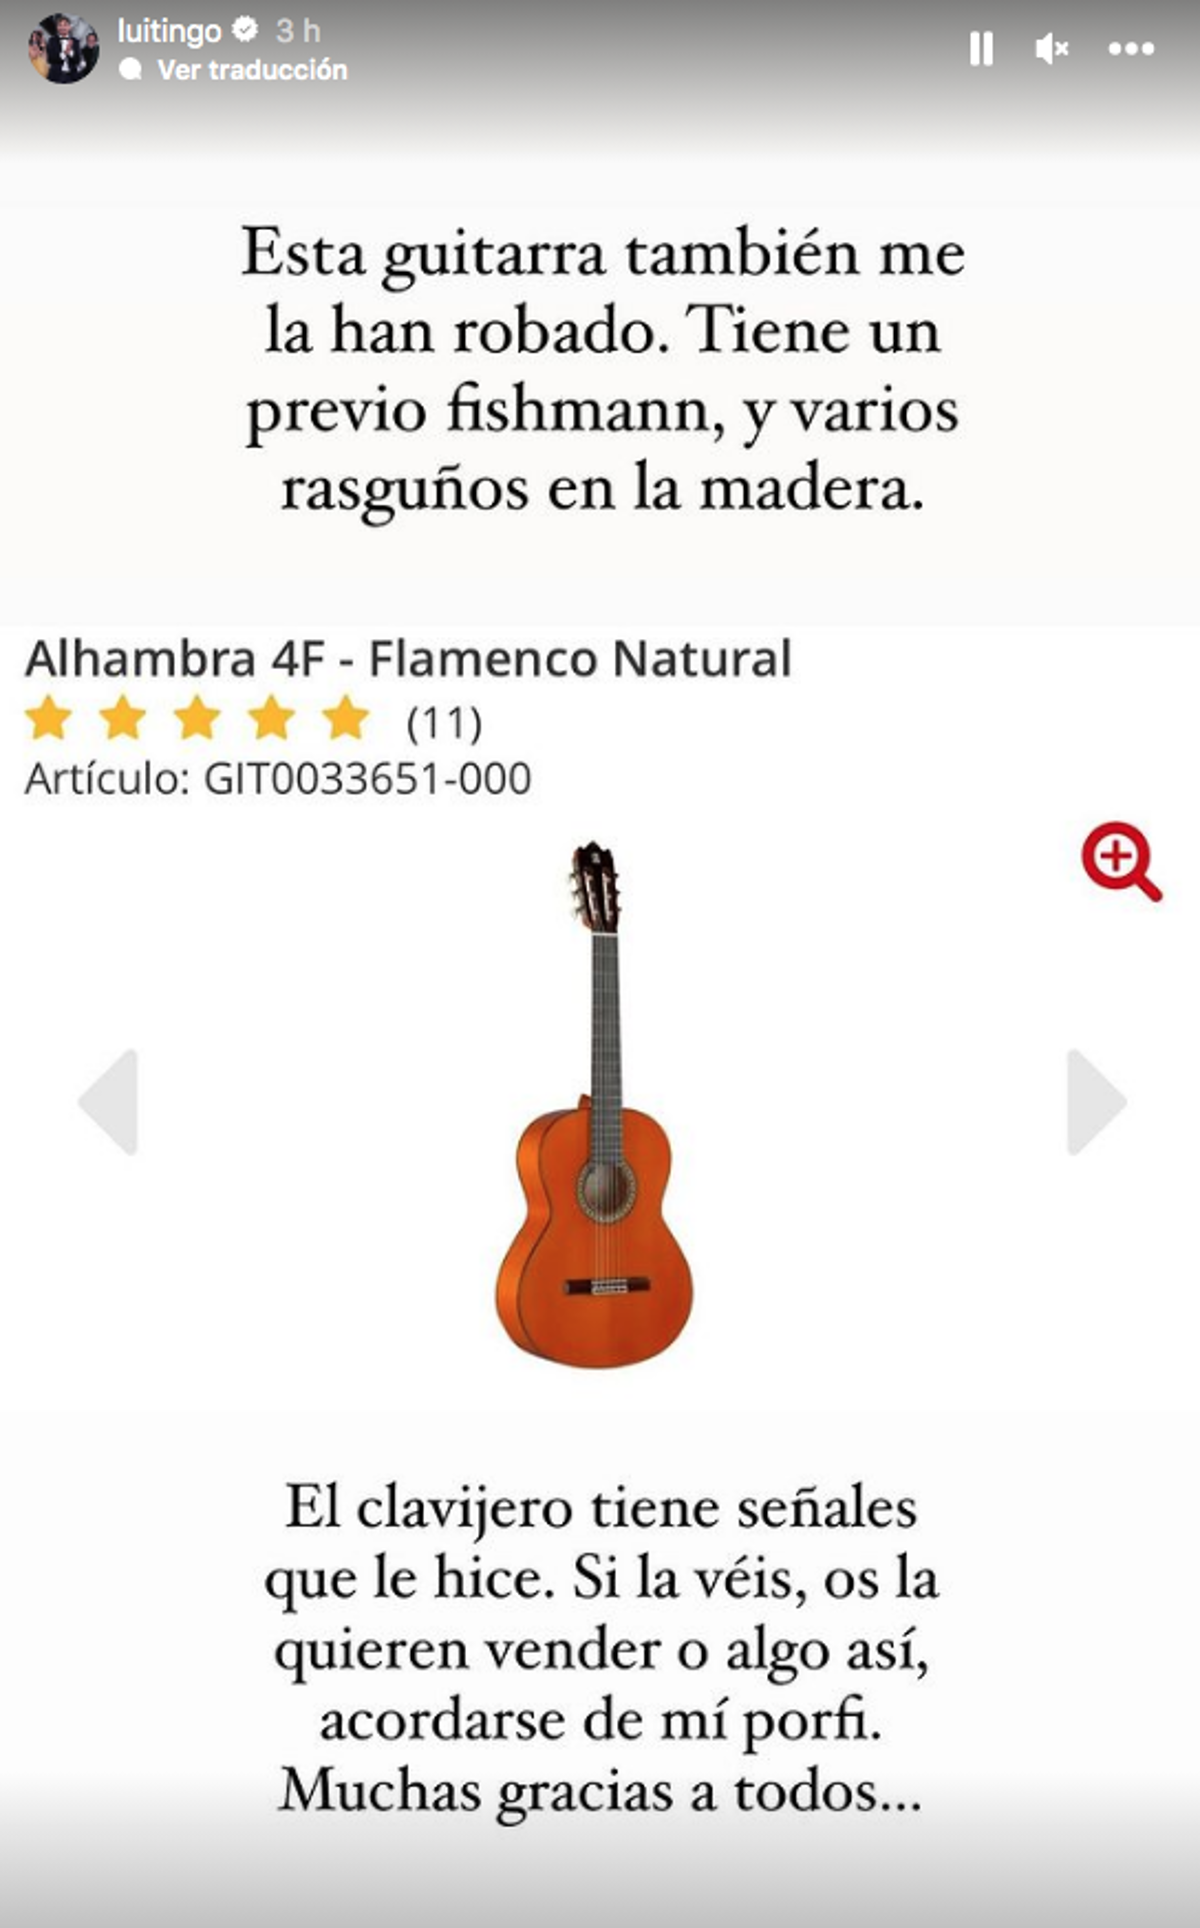 Guitarra Luitingo